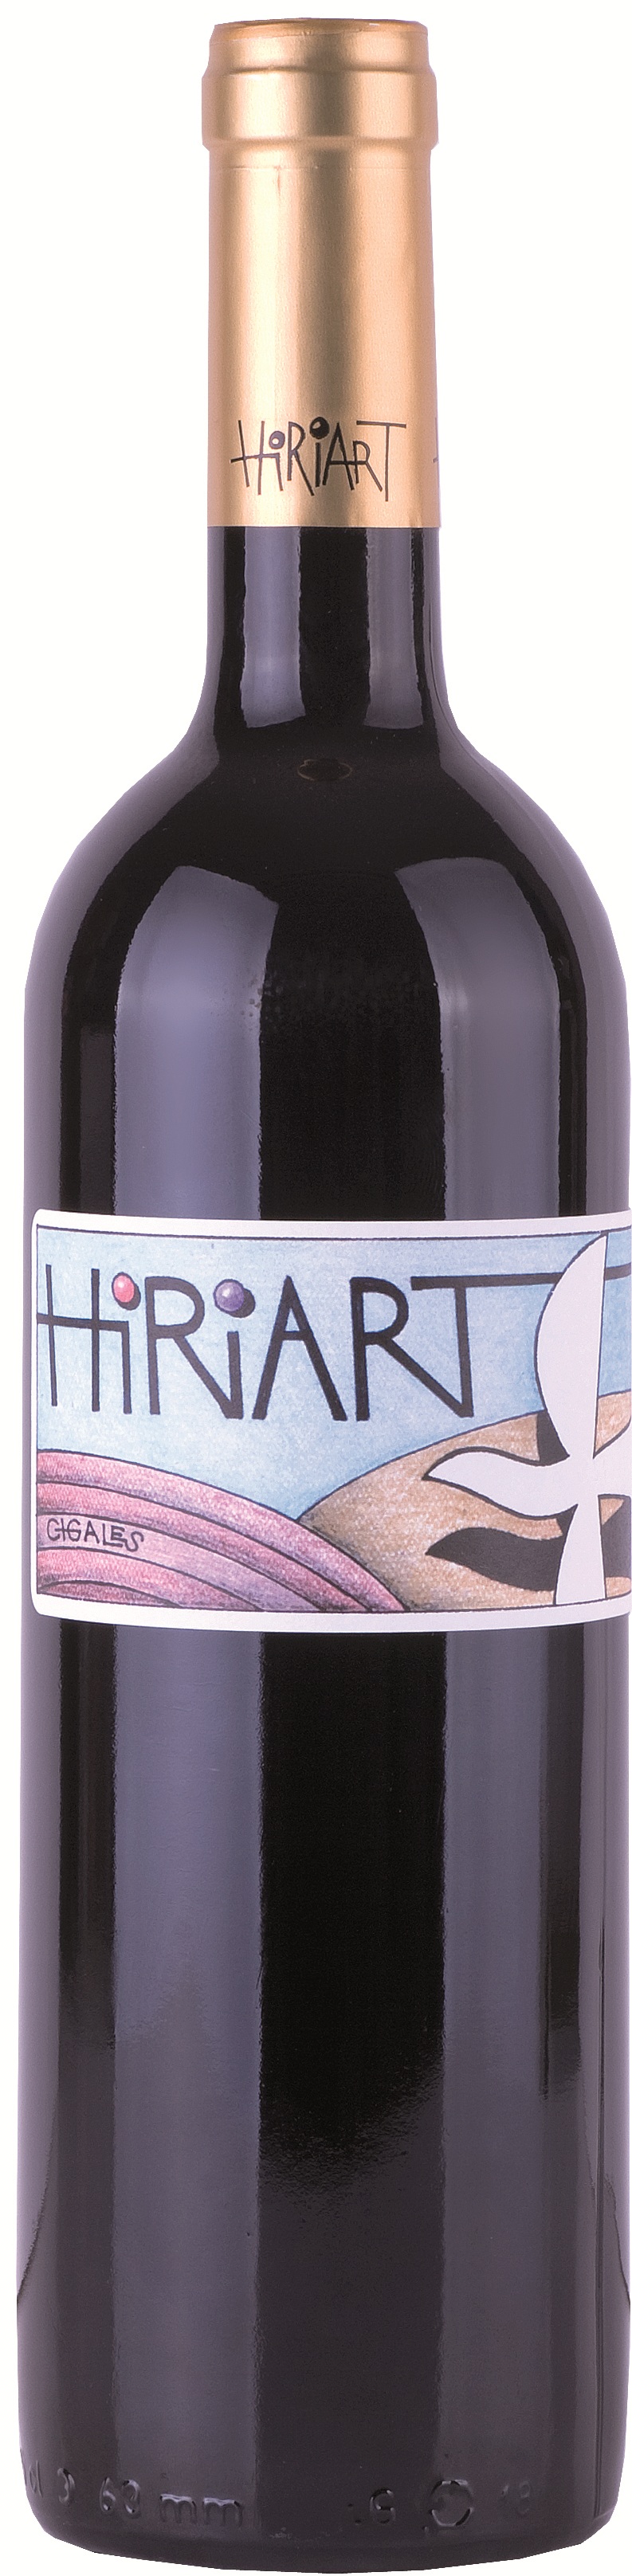 Imagen de la botella de Vino Hiriart Tinto Crianza